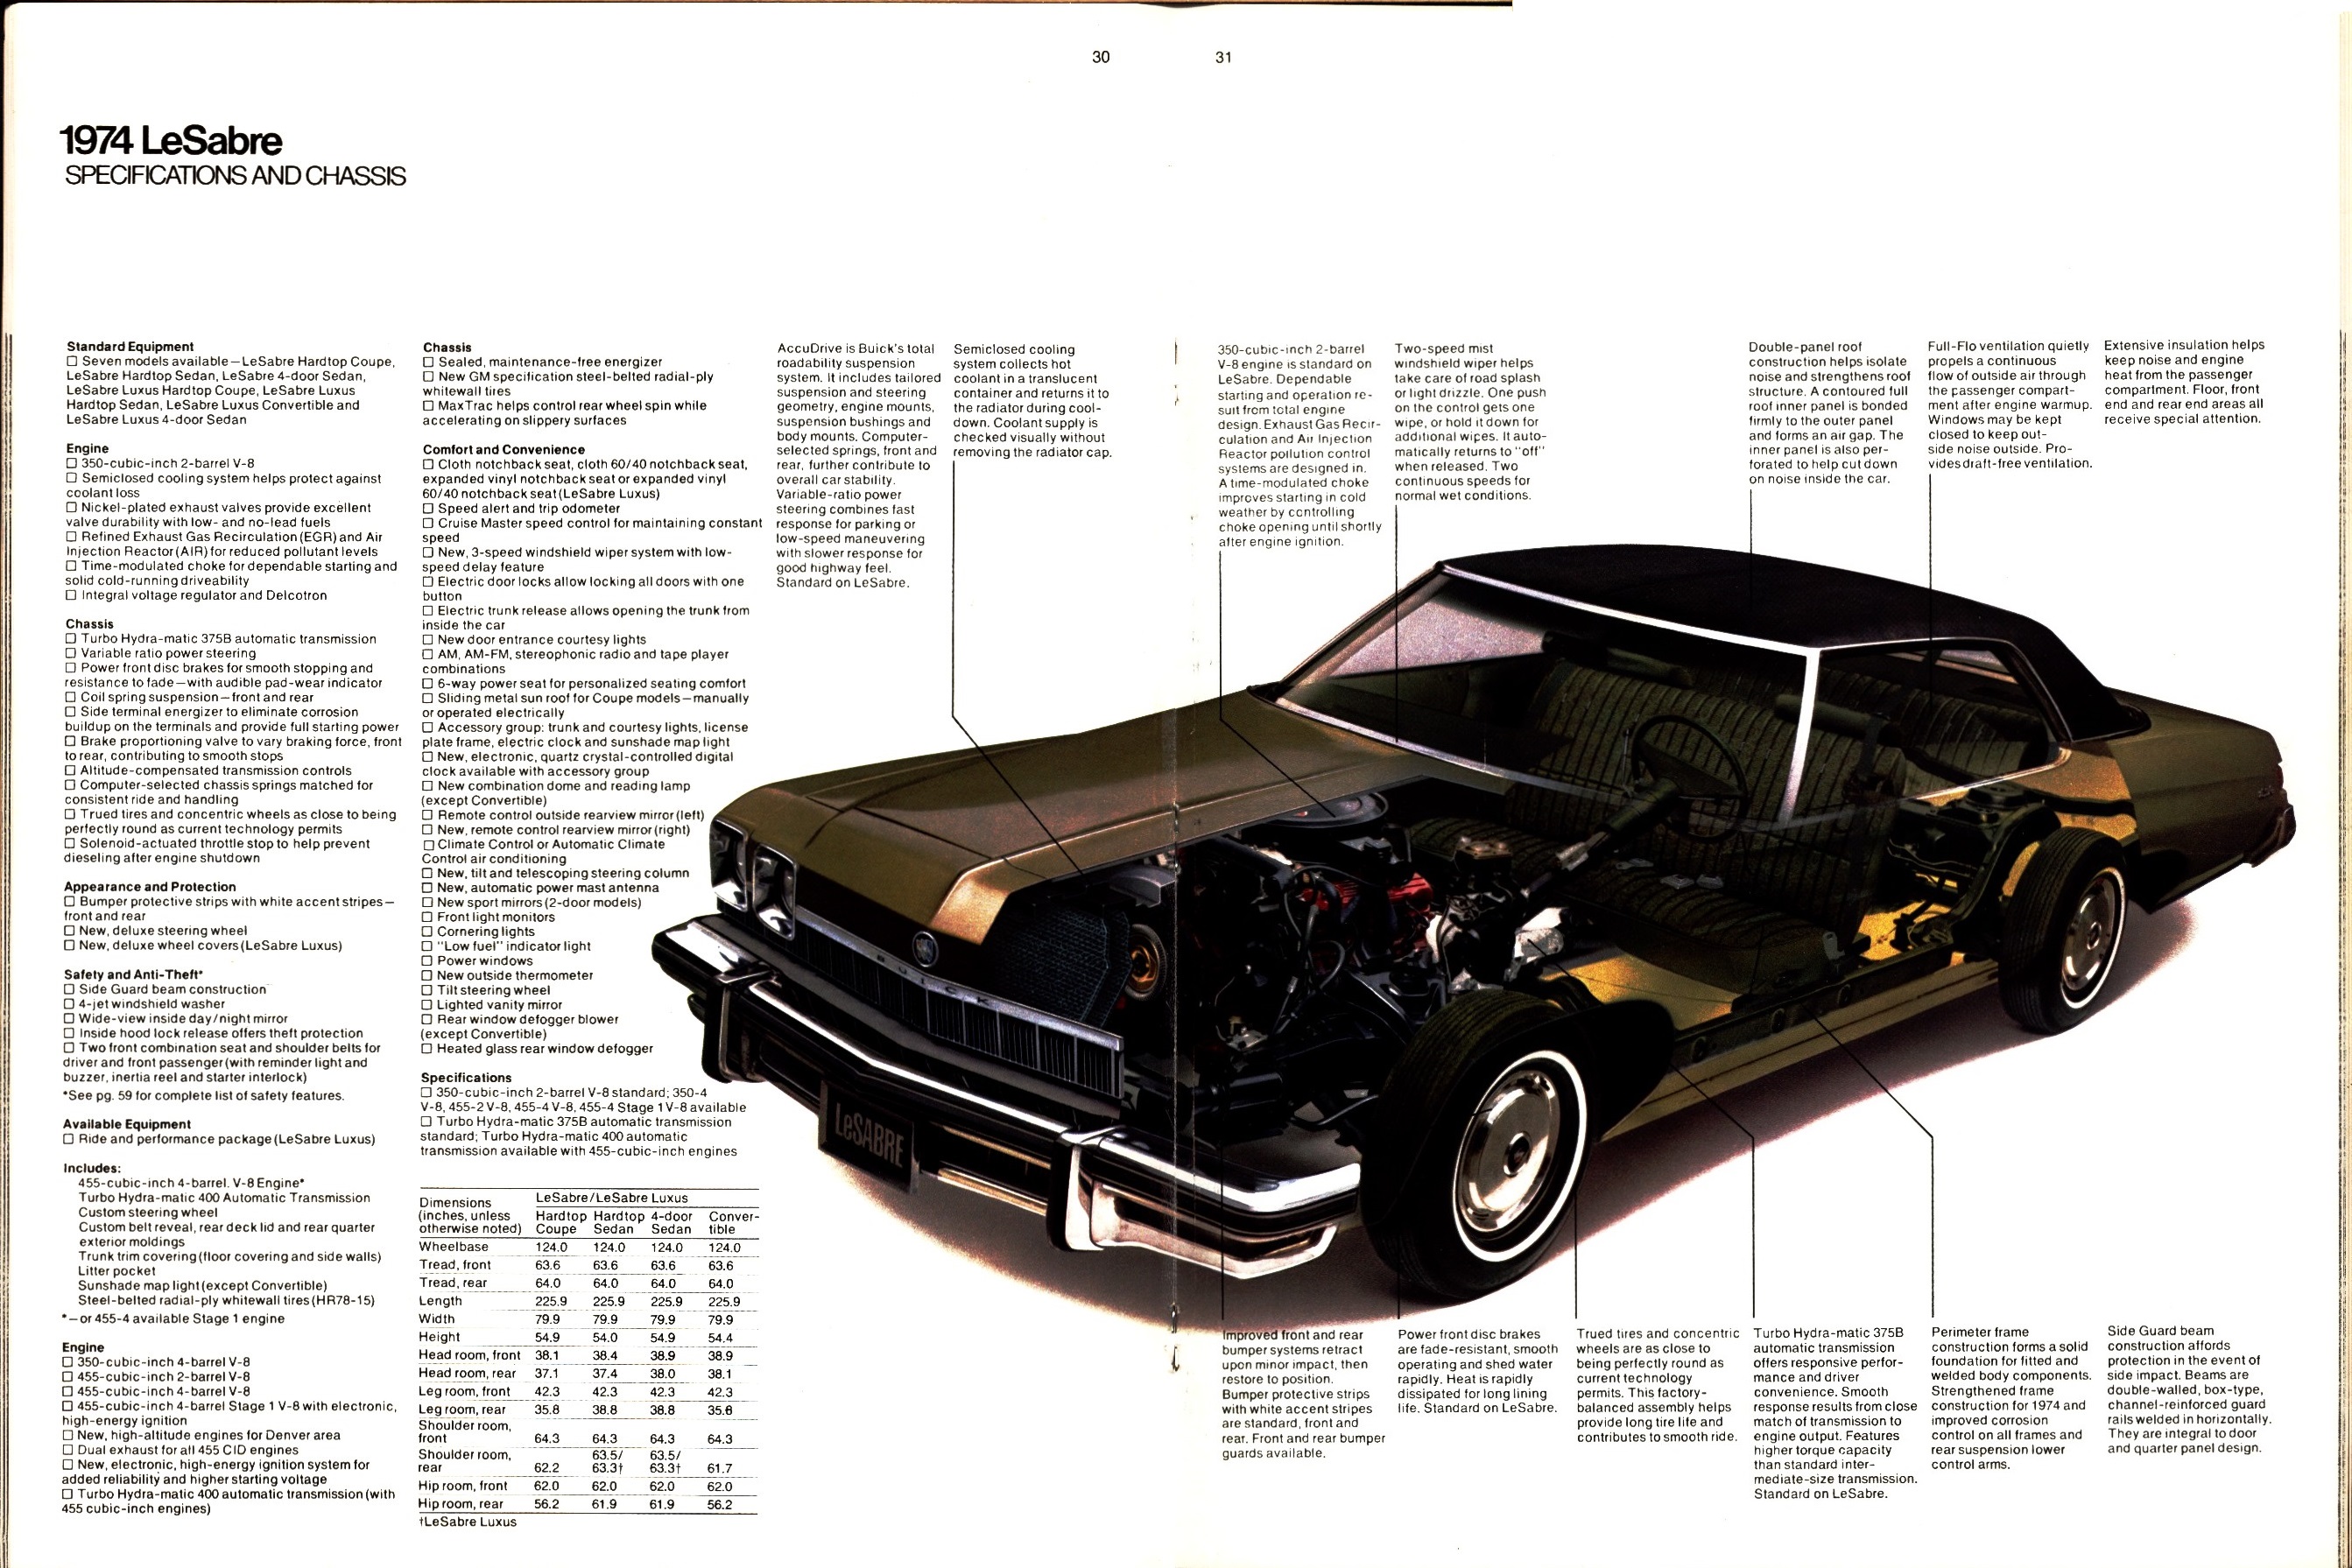 1974 Buick 30-31